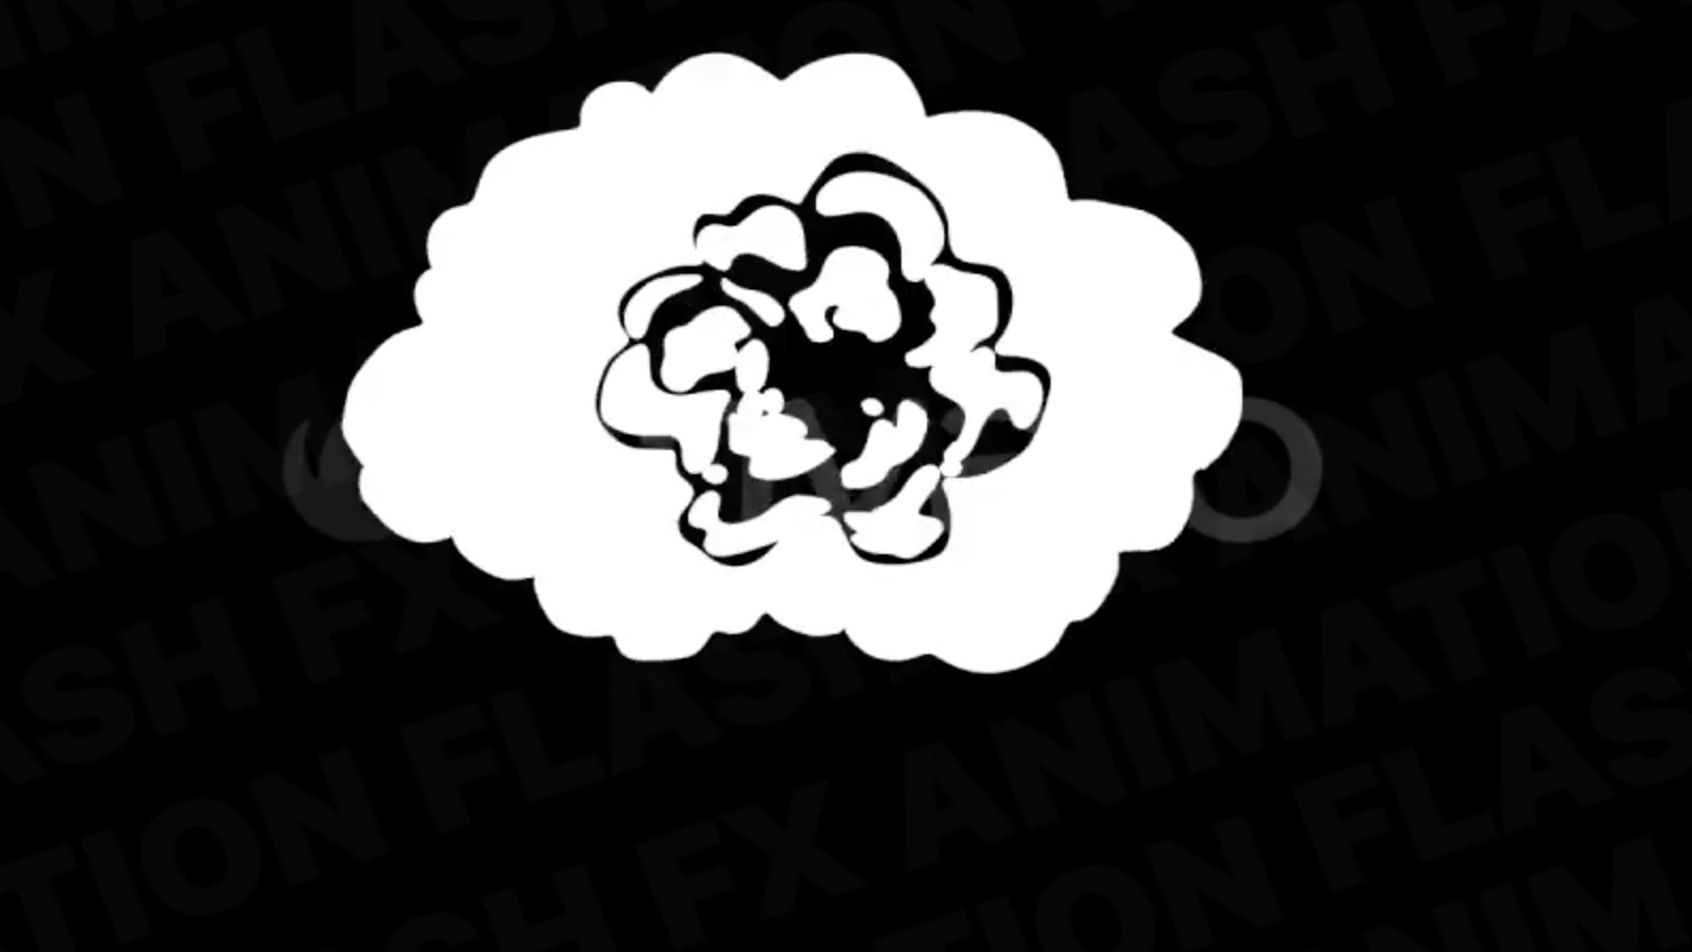 独特创意的Flash FX烟雾元素图形包